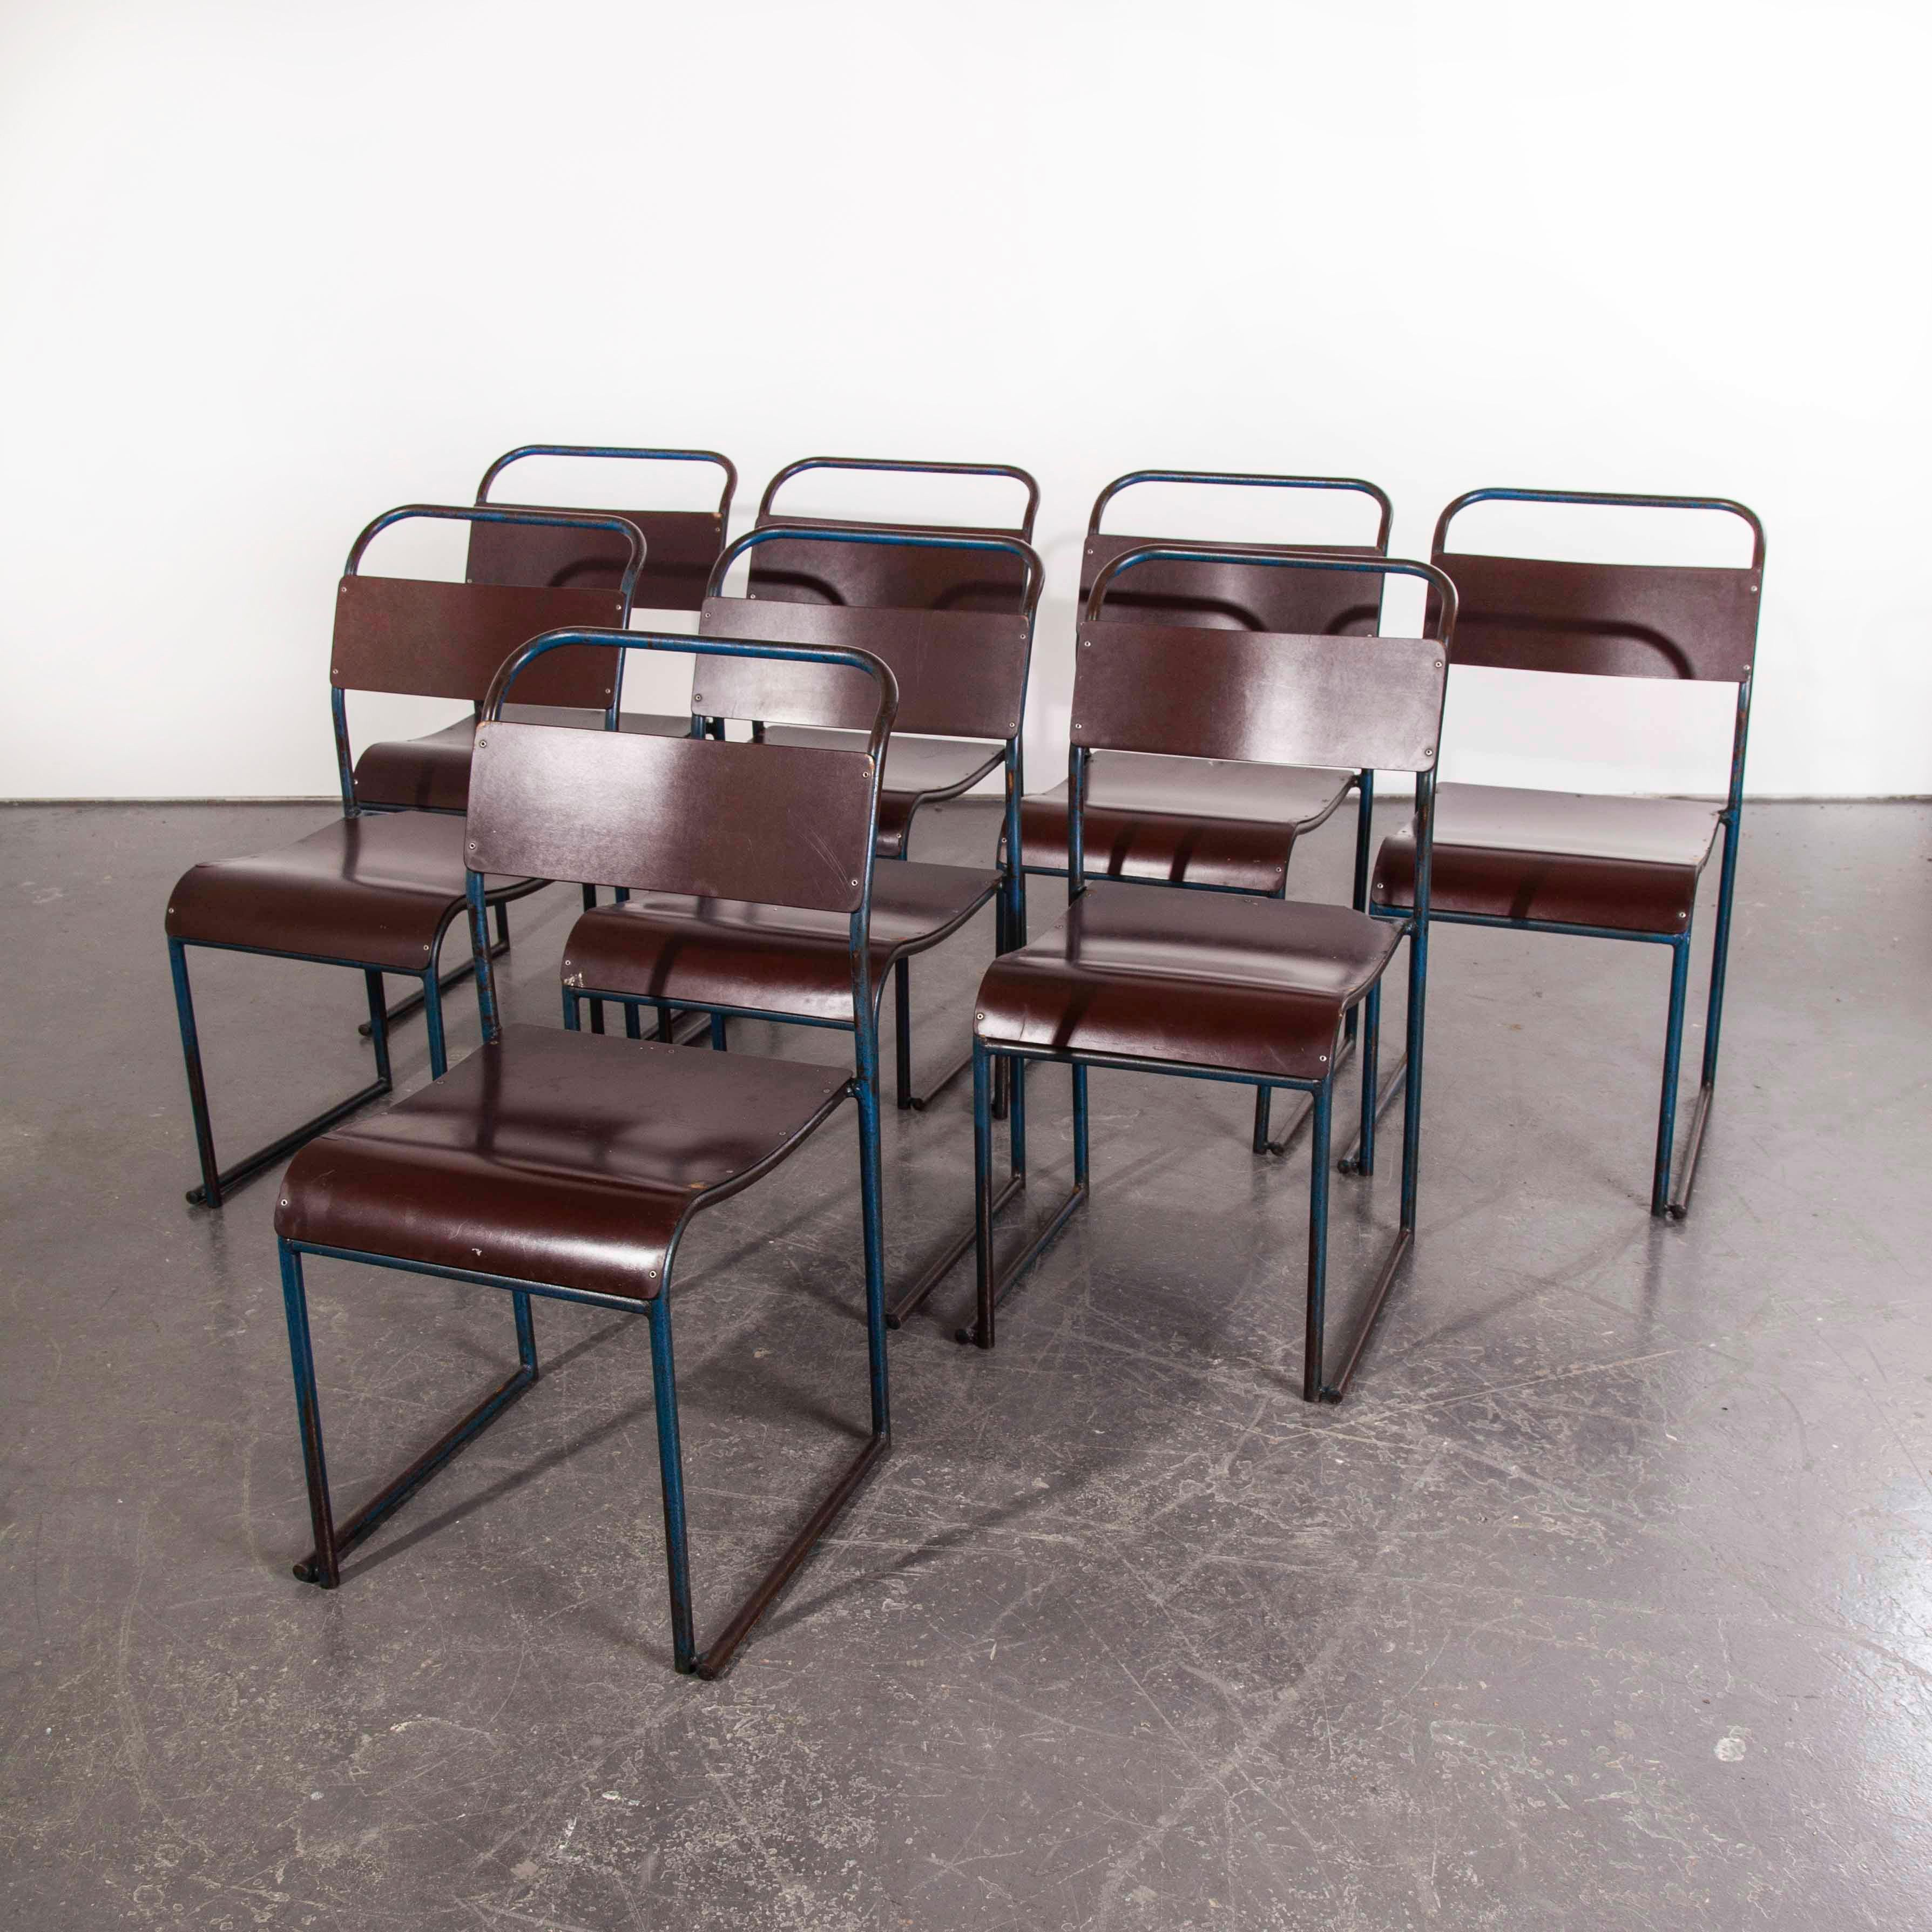 bakelite chairs